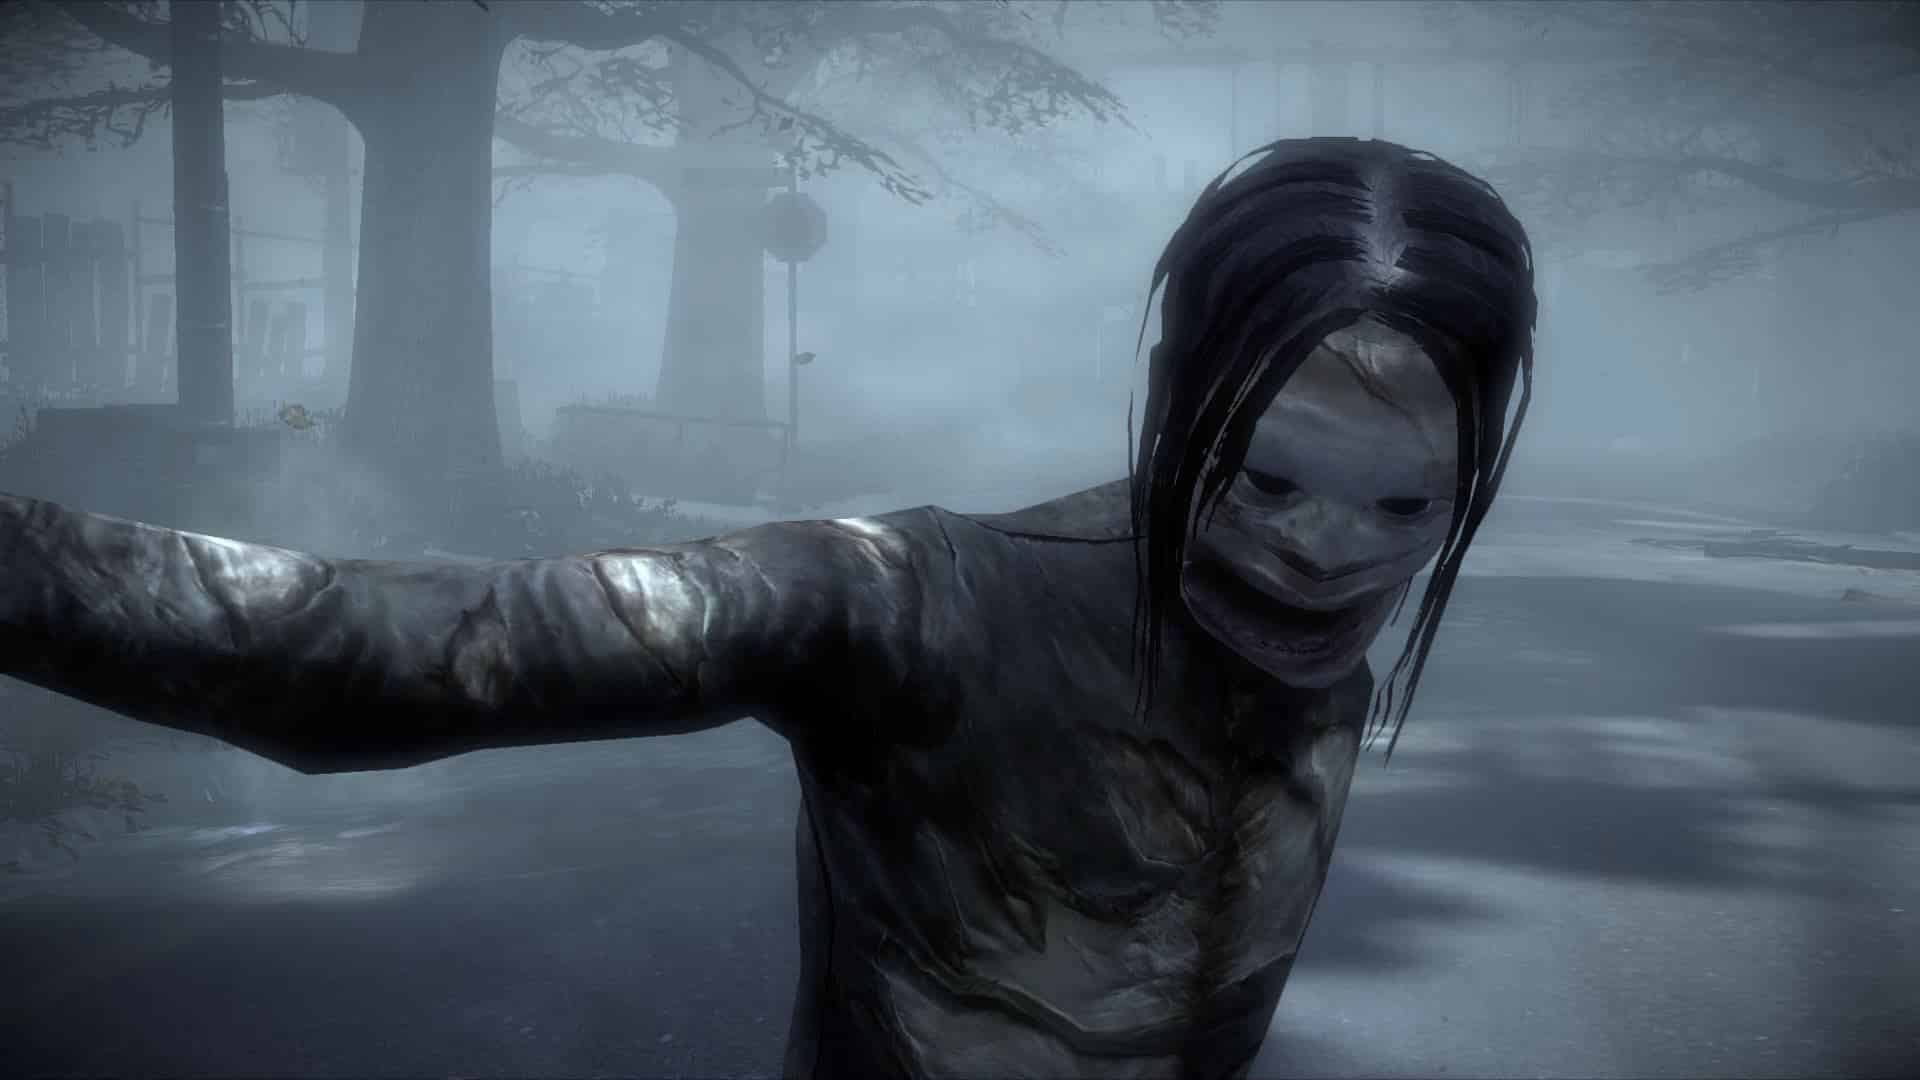 Silent Hill Downpour screenshot